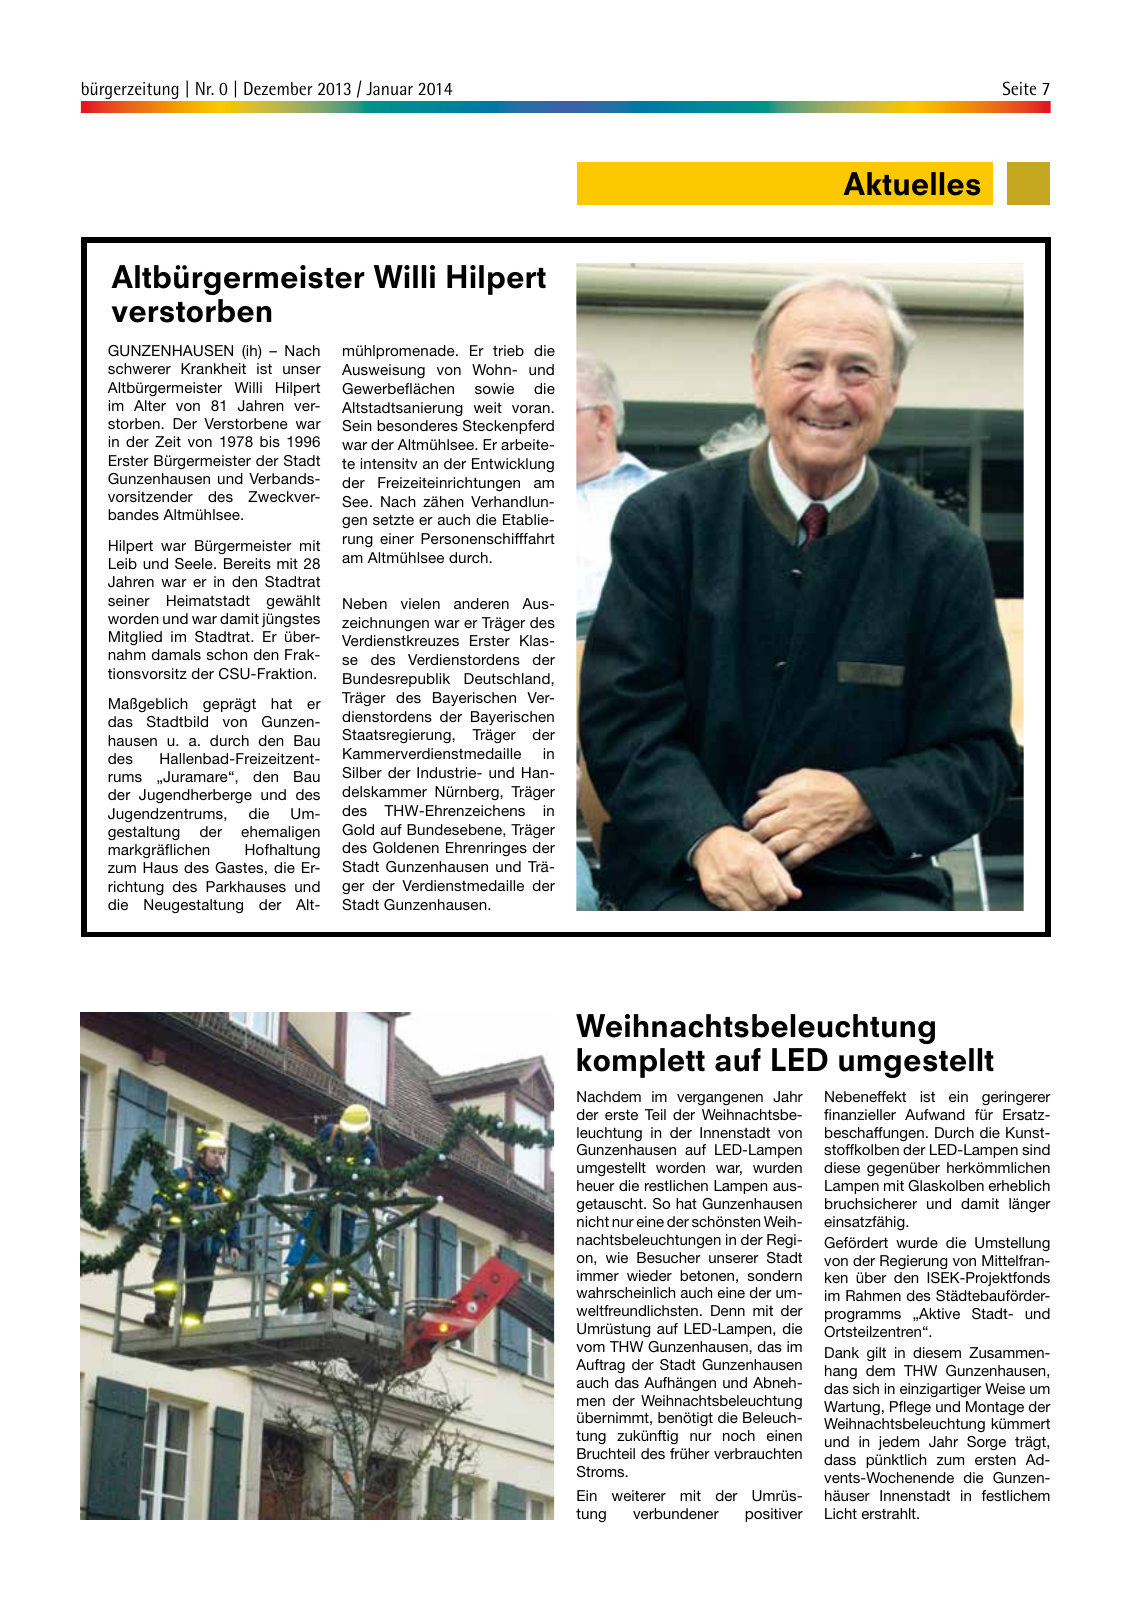 Vorschau bürgerzeitung Nr. 0 Dezember 2013 Januar 2014 Seite 7